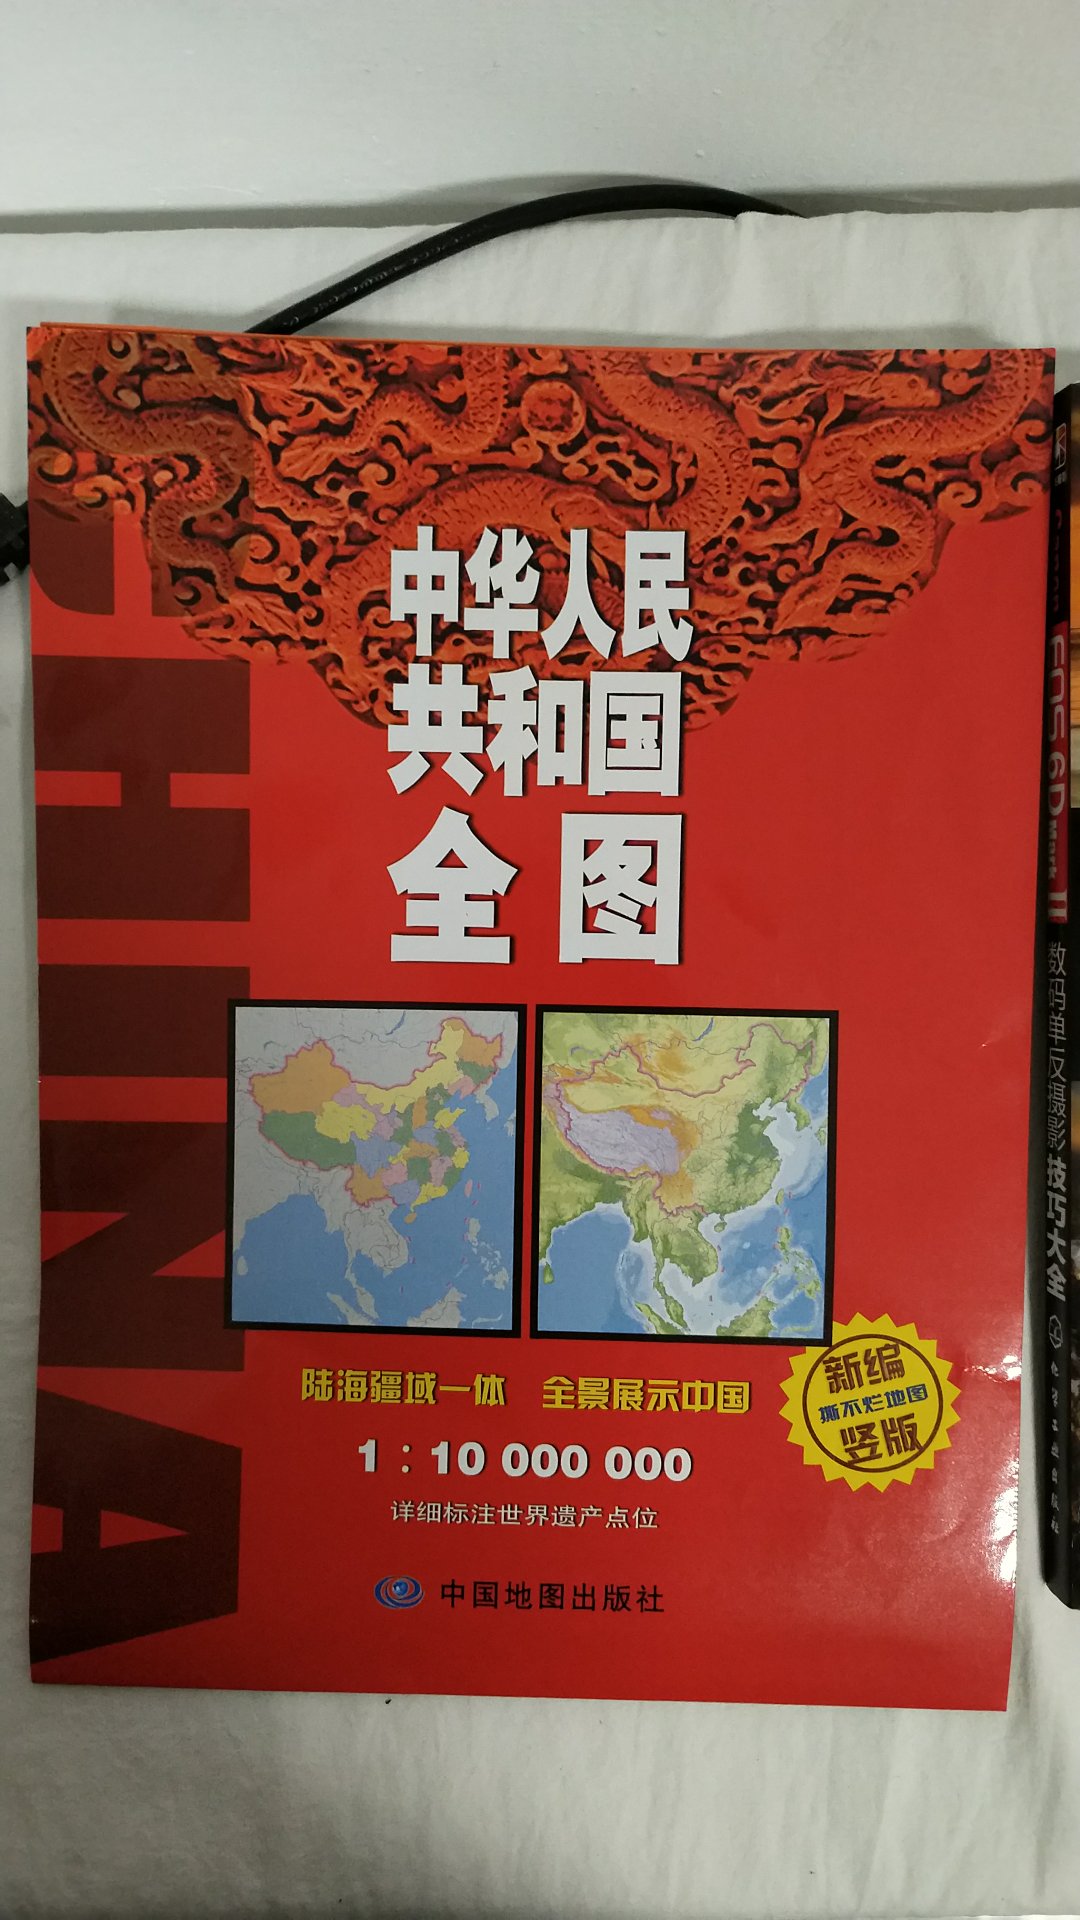 自营的书，这个地图不错还有不同时期的行政地图，竖版的地图凸出来了南中国的大海！还有地形图，纸质皮实耐用的感觉！价格还算合适吧，活动也就买了！